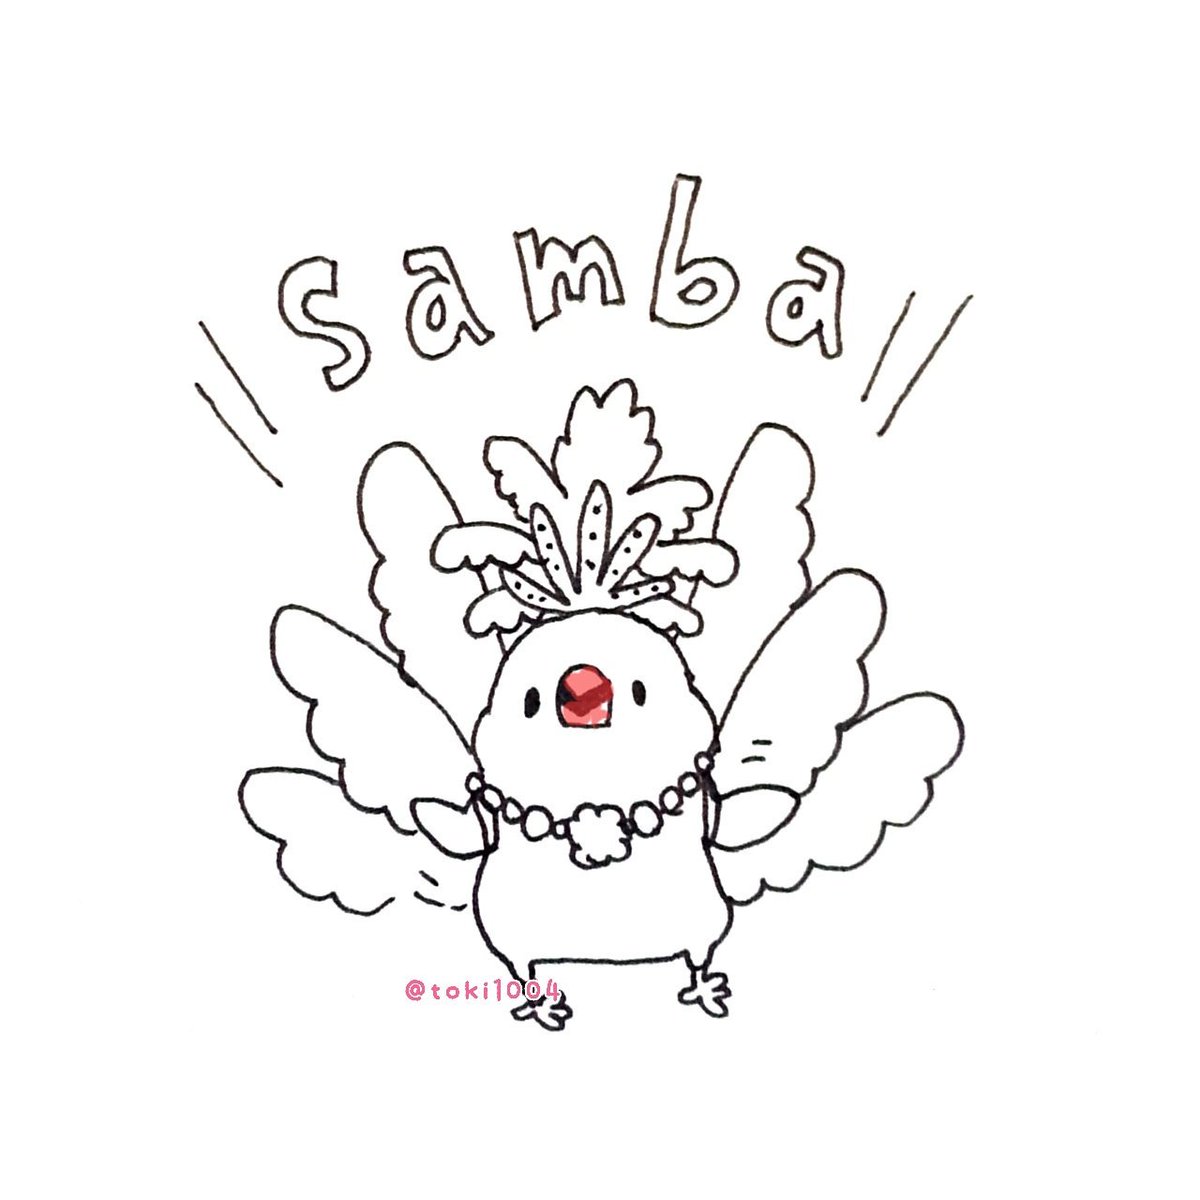 とき 10 24 25は大阪で鳥さんのイベント على تويتر さんば 絵 イラスト イラストレーター お絵描き ドローイング 一発描き ボールペン 文鳥 Bird らくがき 一日一絵 イラスト基地 サンバ Samba ダンス ブラジル カーニバル T Co Pyiwi4urpd